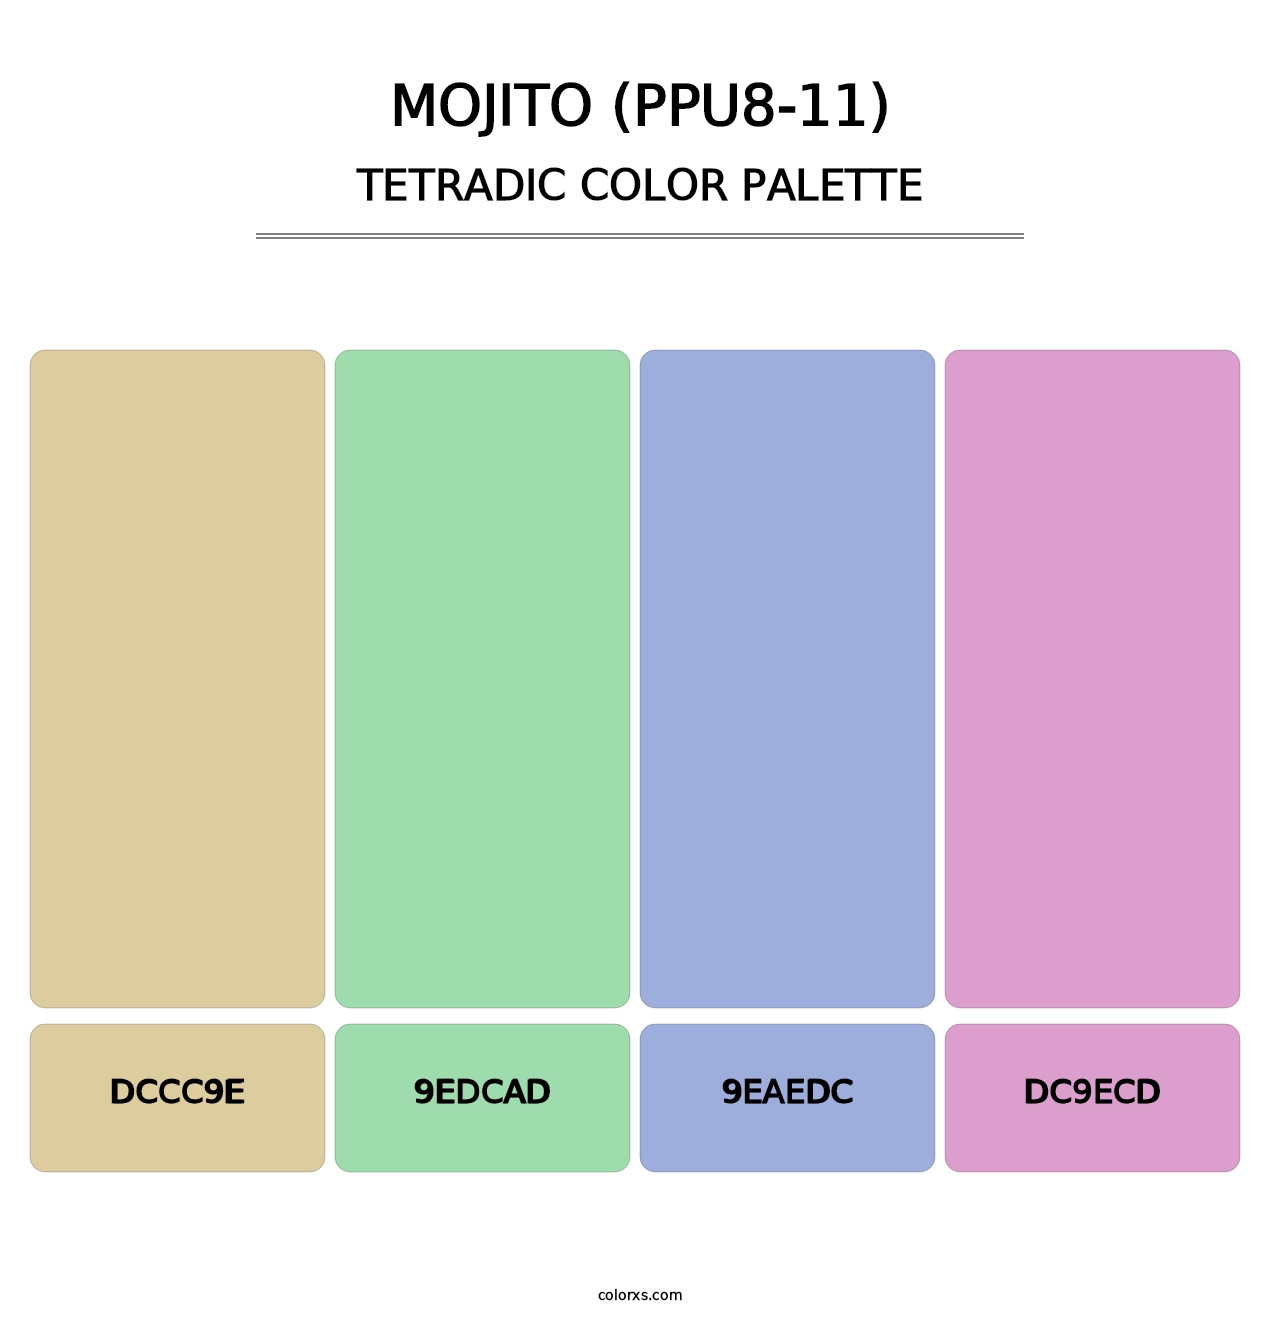 Mojito (PPU8-11) - Tetradic Color Palette